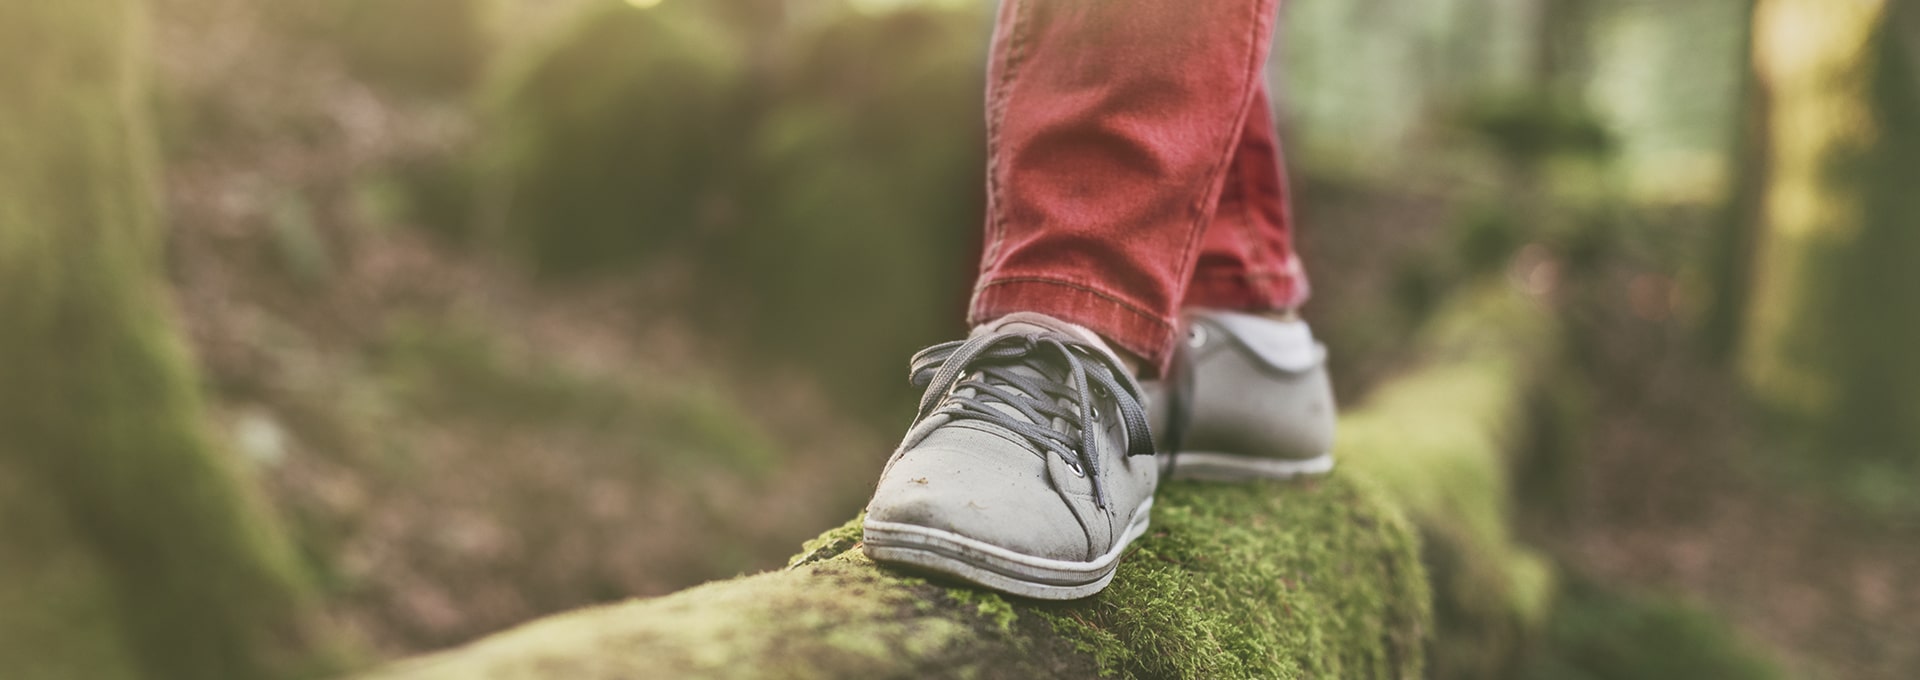 Fötter som bär gråa skor som balanserar på en trästock i skogen